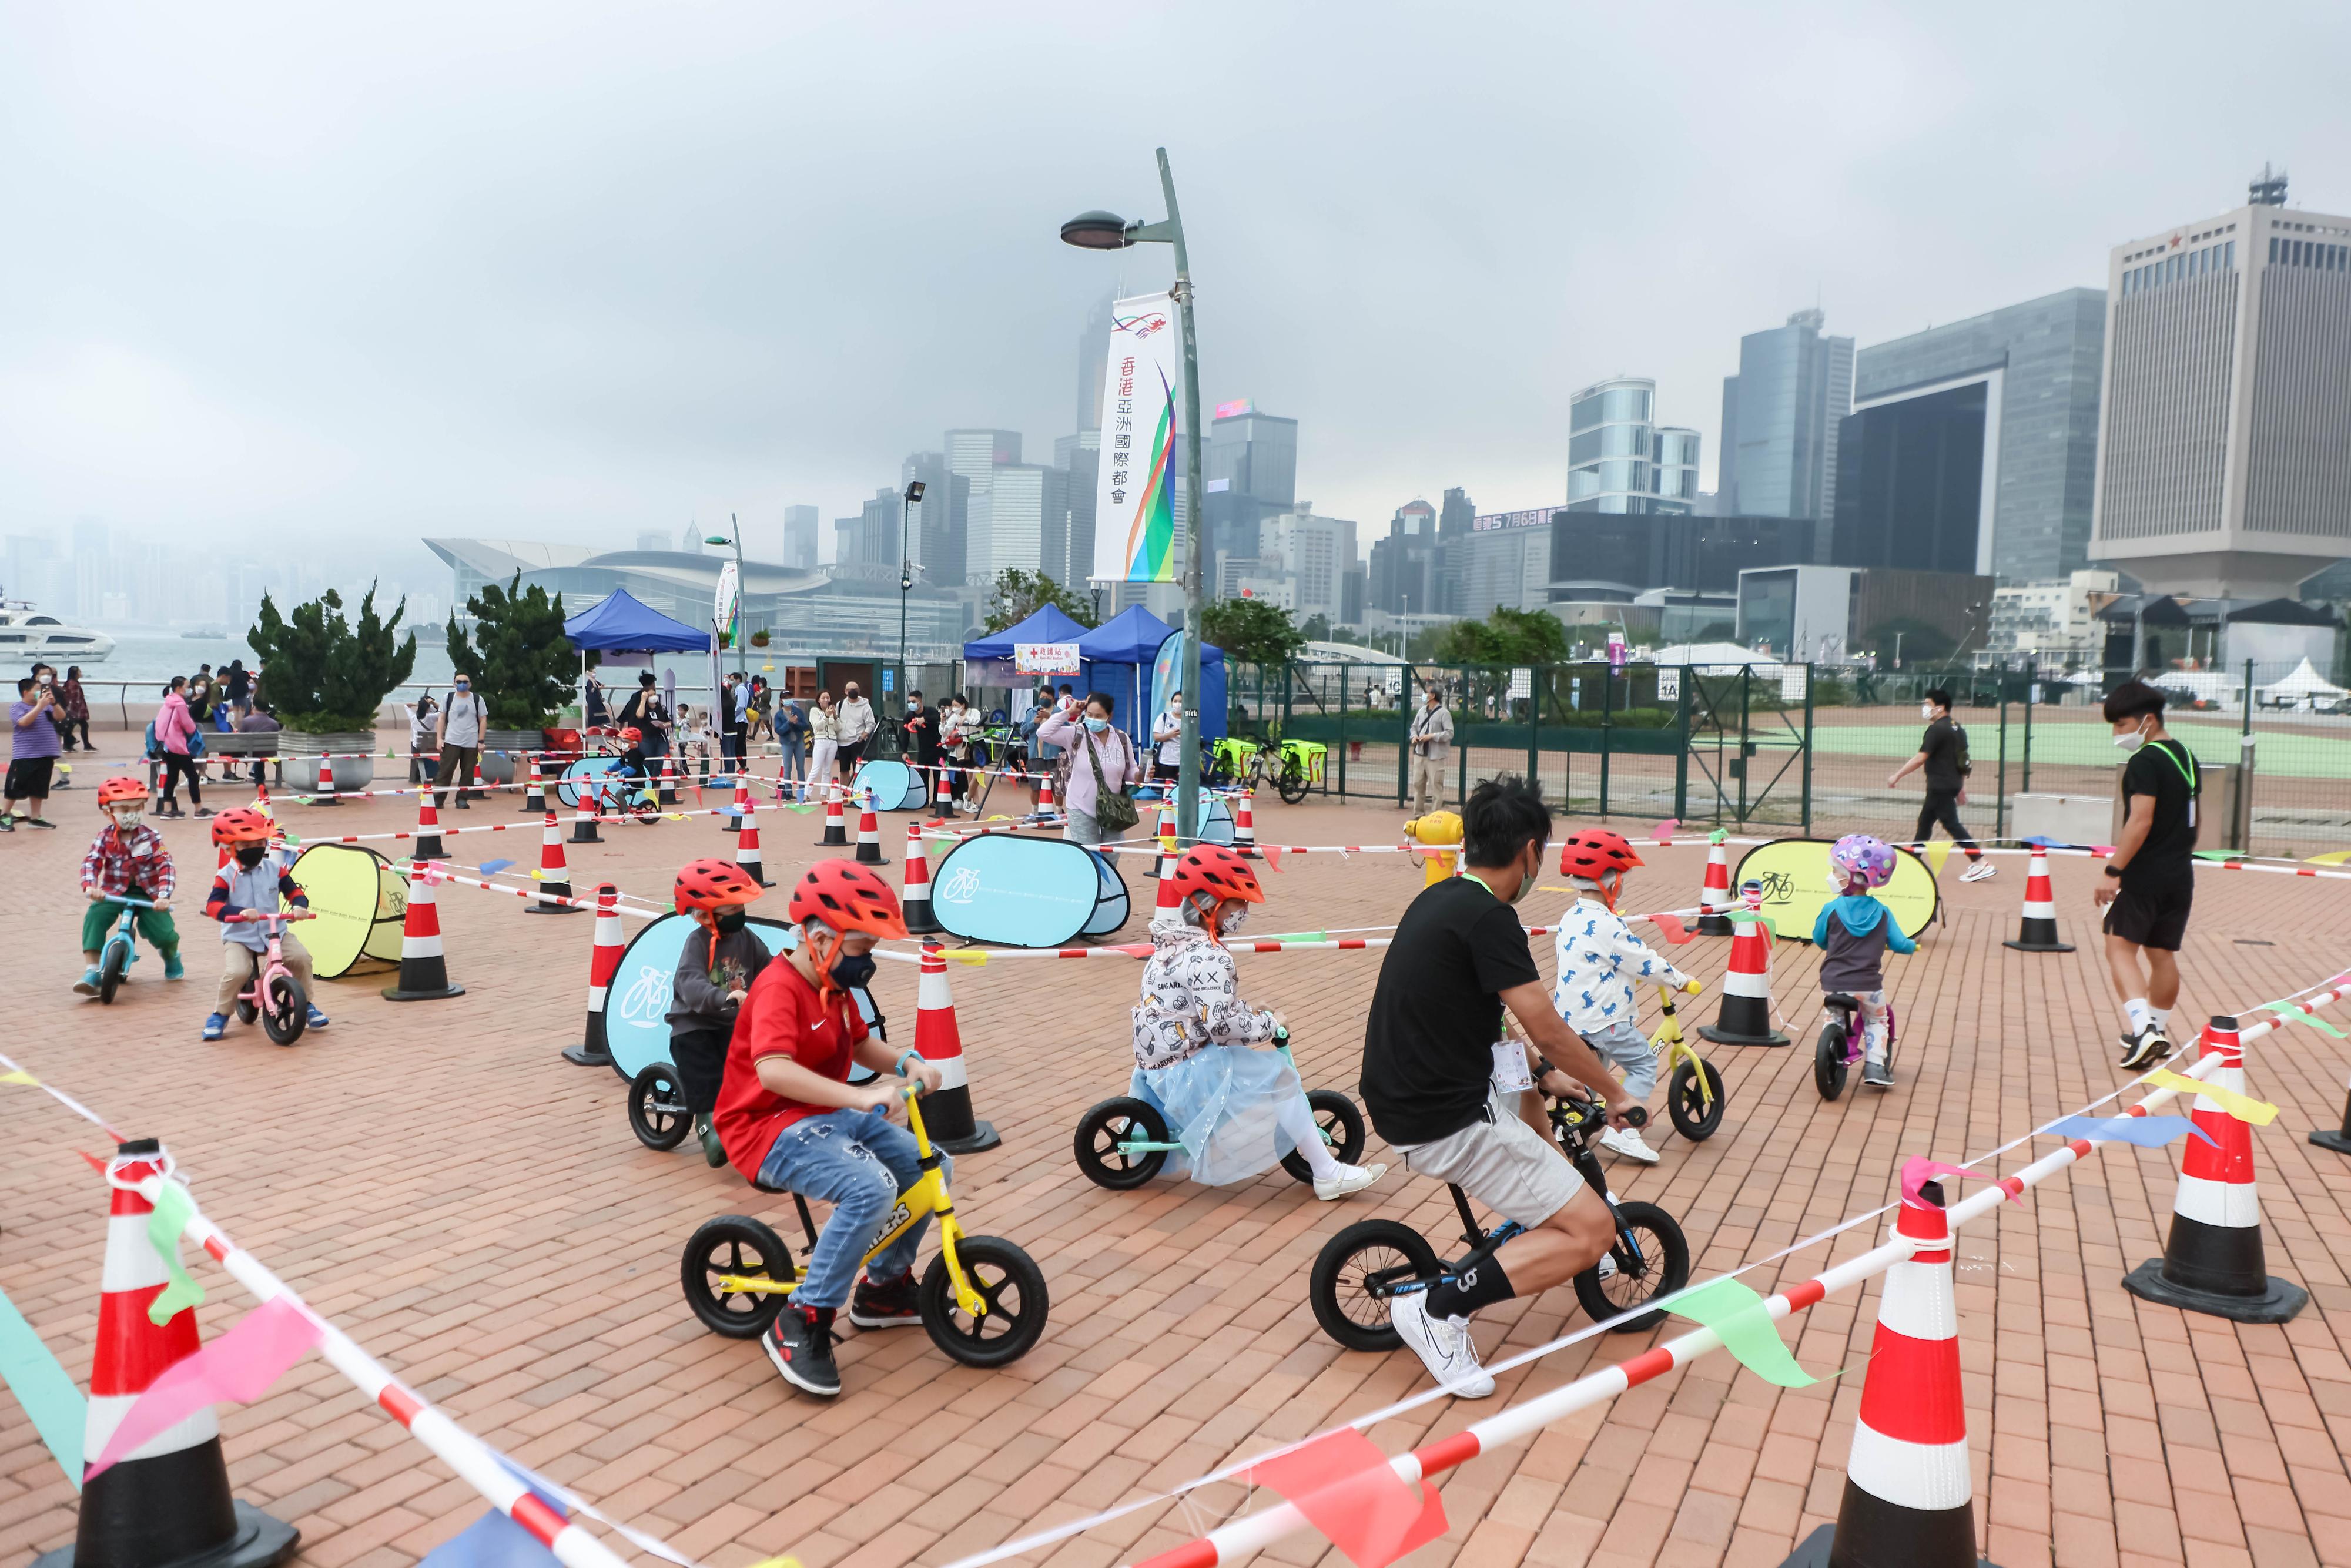 海濱事務委員會和土木工程拓展署今日（十一月二十七日）舉辦維港共享徑同樂日。圖示參加者參與單車遊戲。